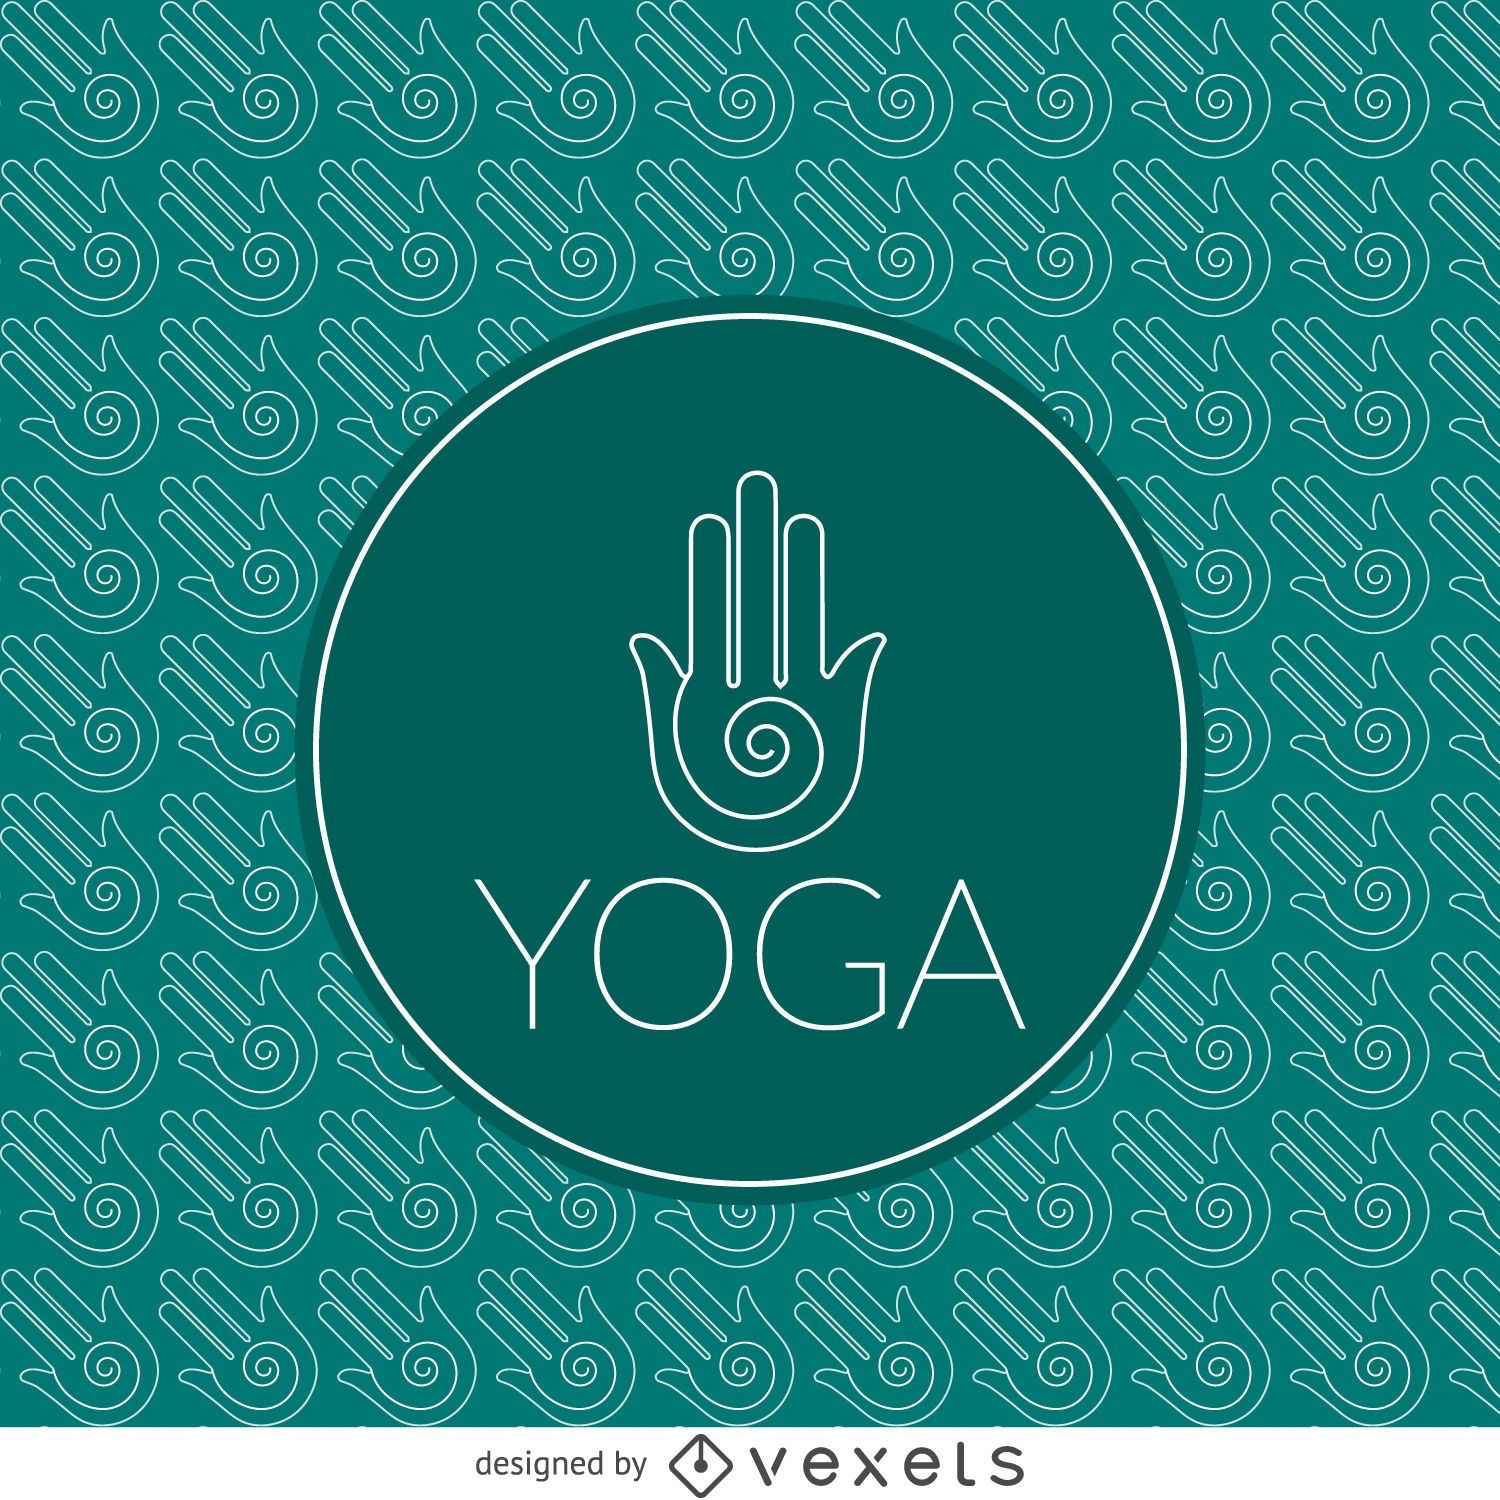 Yoga sign outline pattern